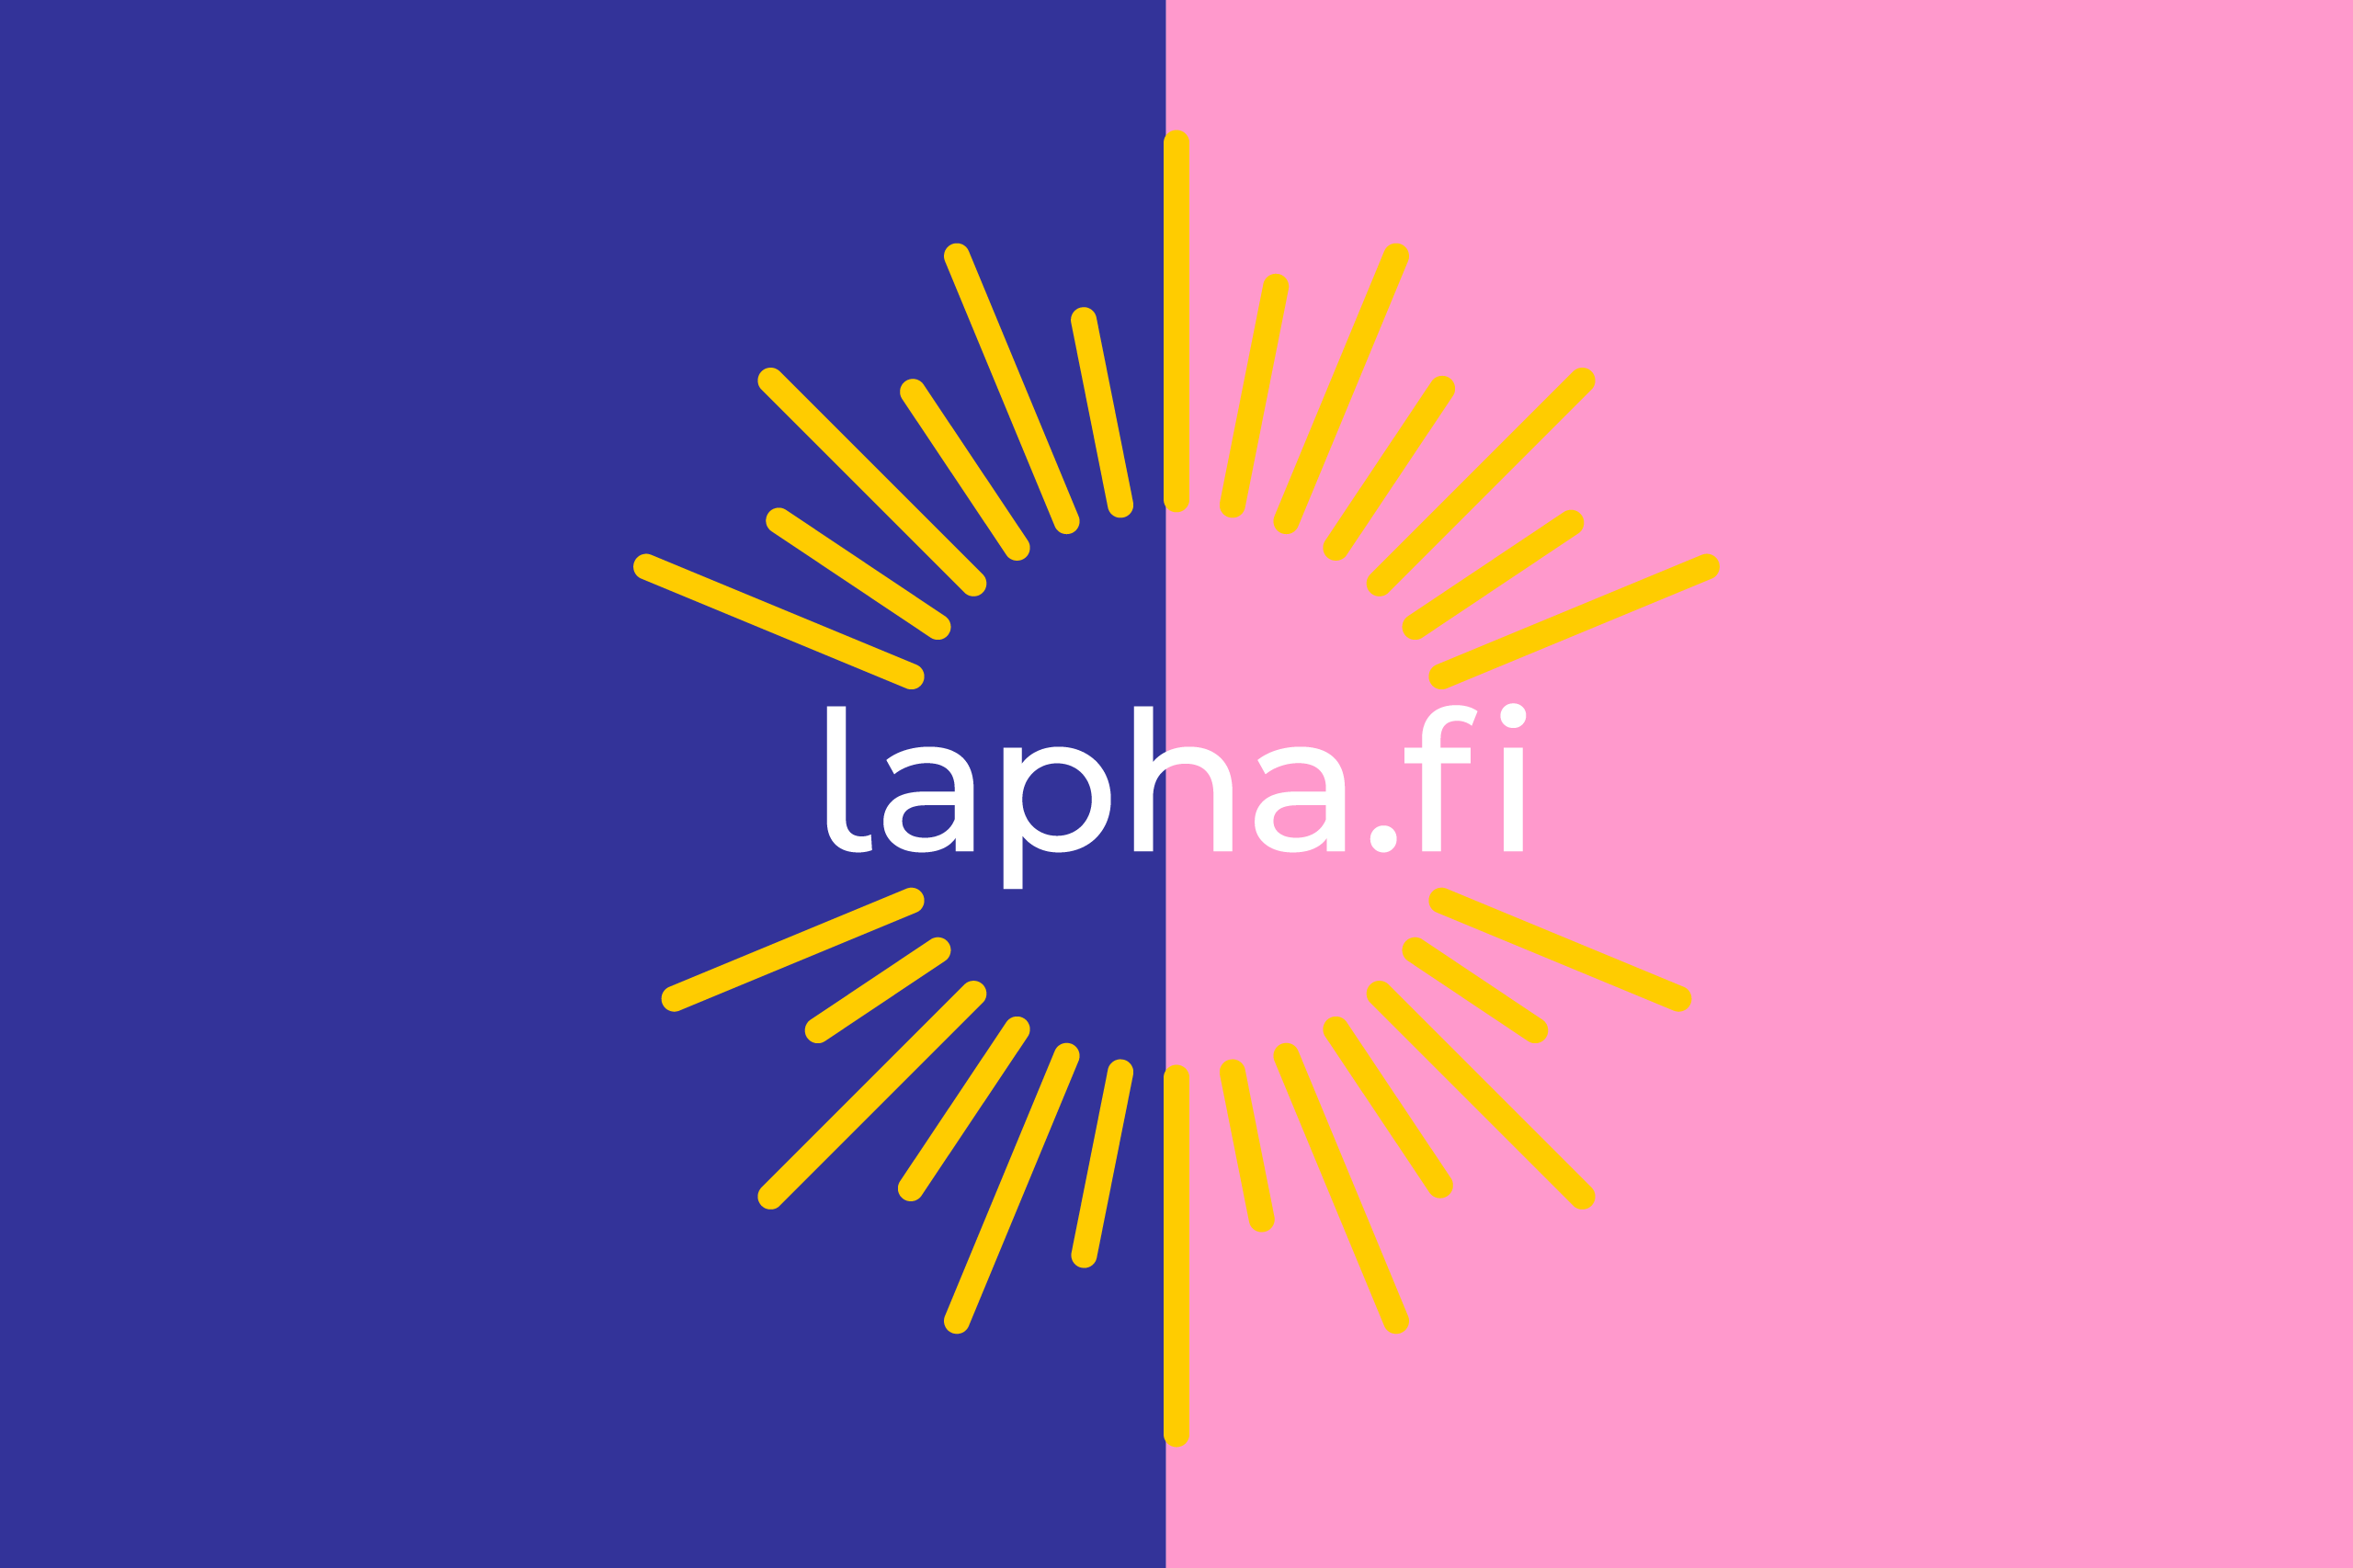 Sinisellä ja vaaleanpunaisella pohjalla lapin hyvinvointialueen logo ja teksti lapha.fi